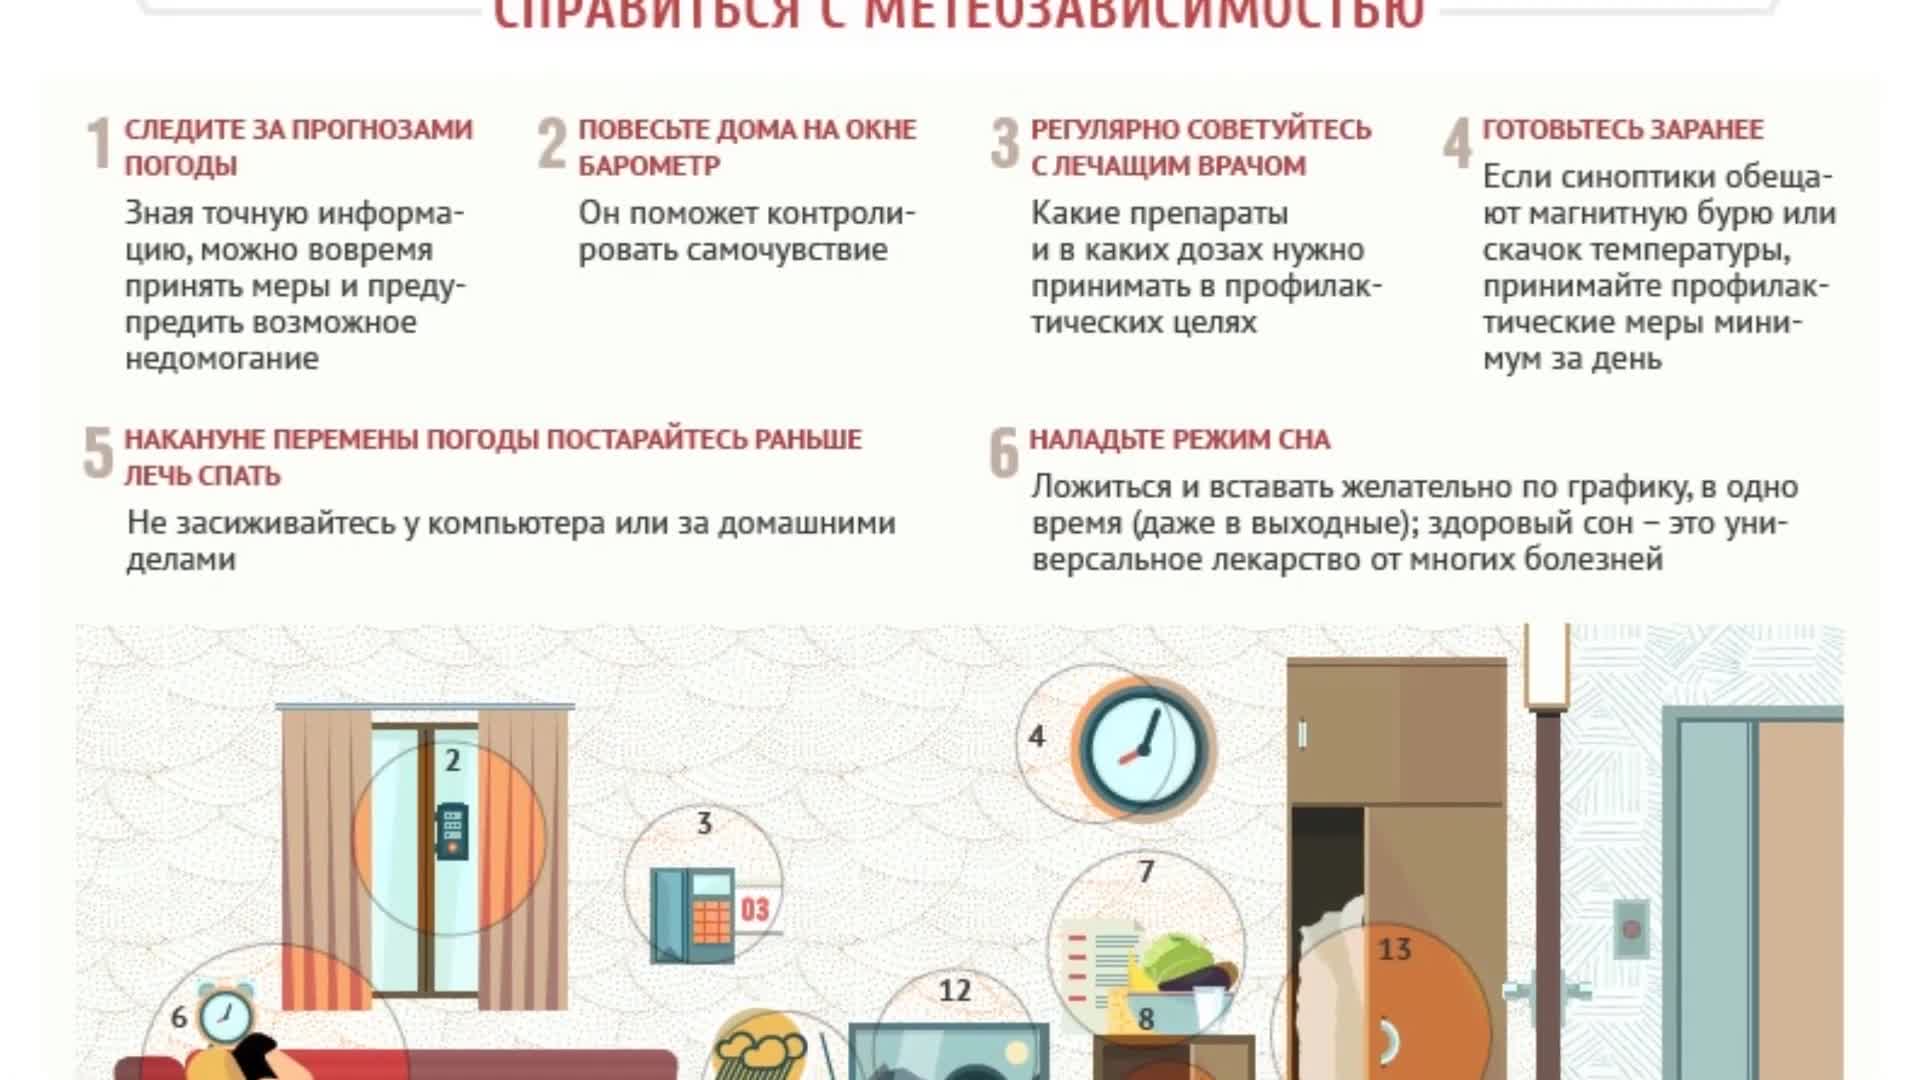 Опасные дни в июне 2022 года для метеозависимых людей | KPIZ.ru